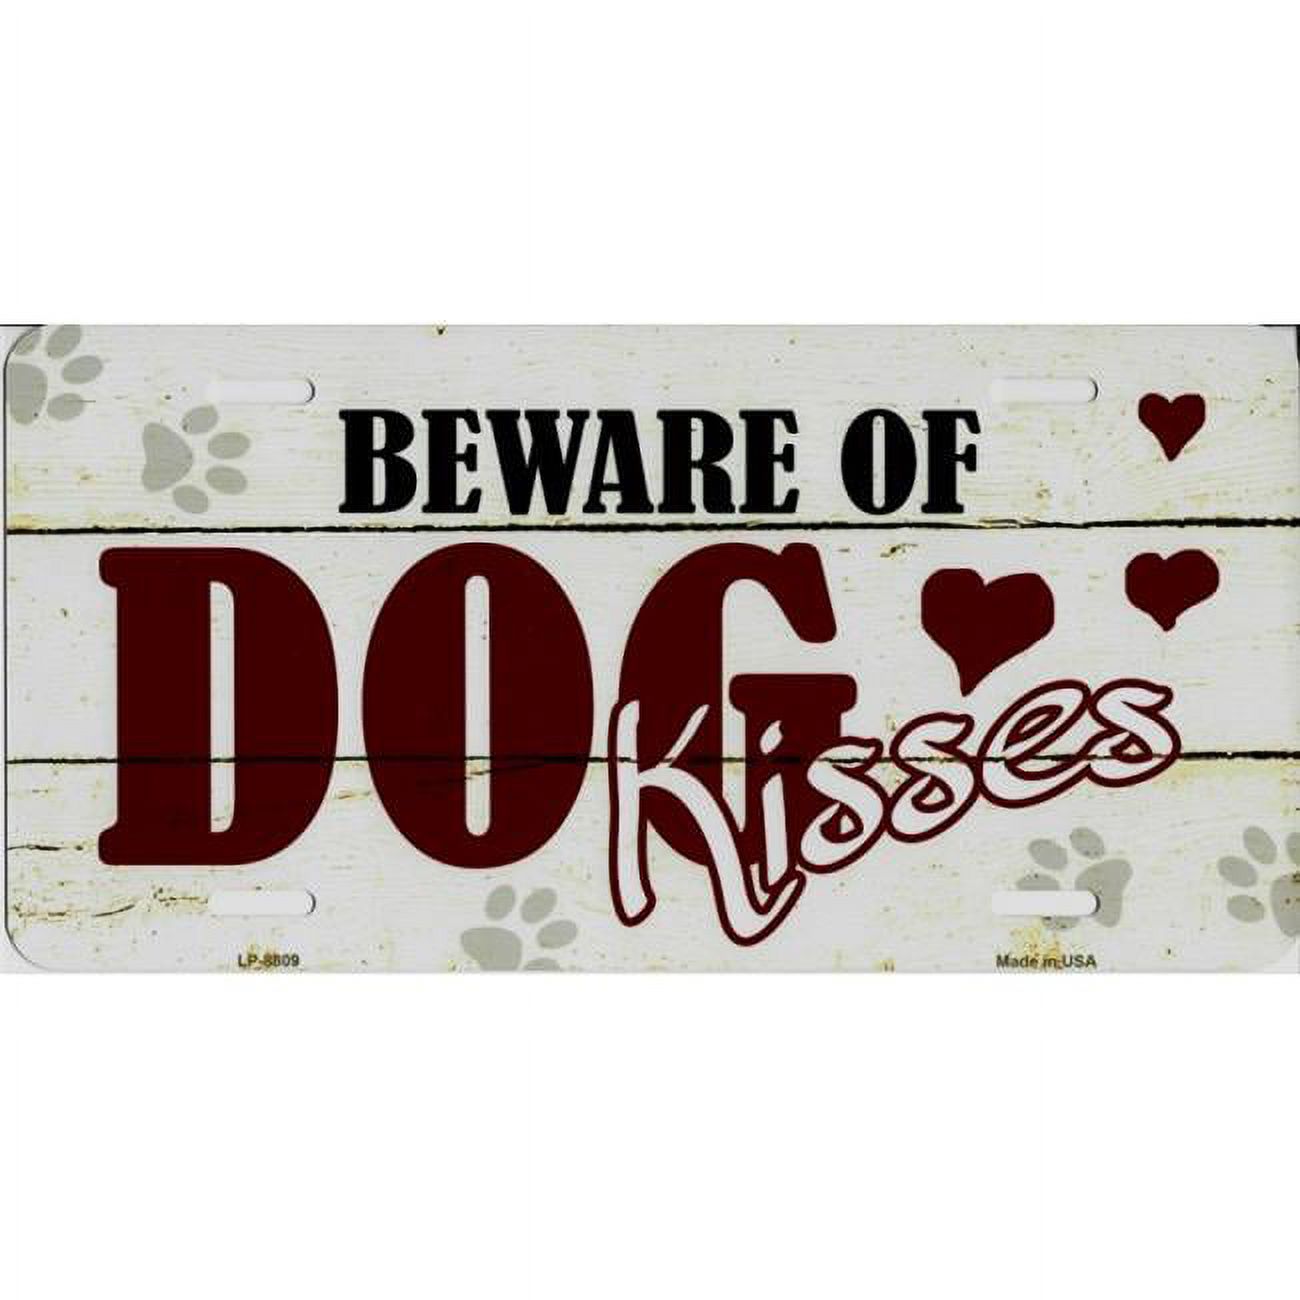 212 Main LP-8809 6 x 12 in. Beware of Dog Kisses Metal License Plate - image 1 of 2